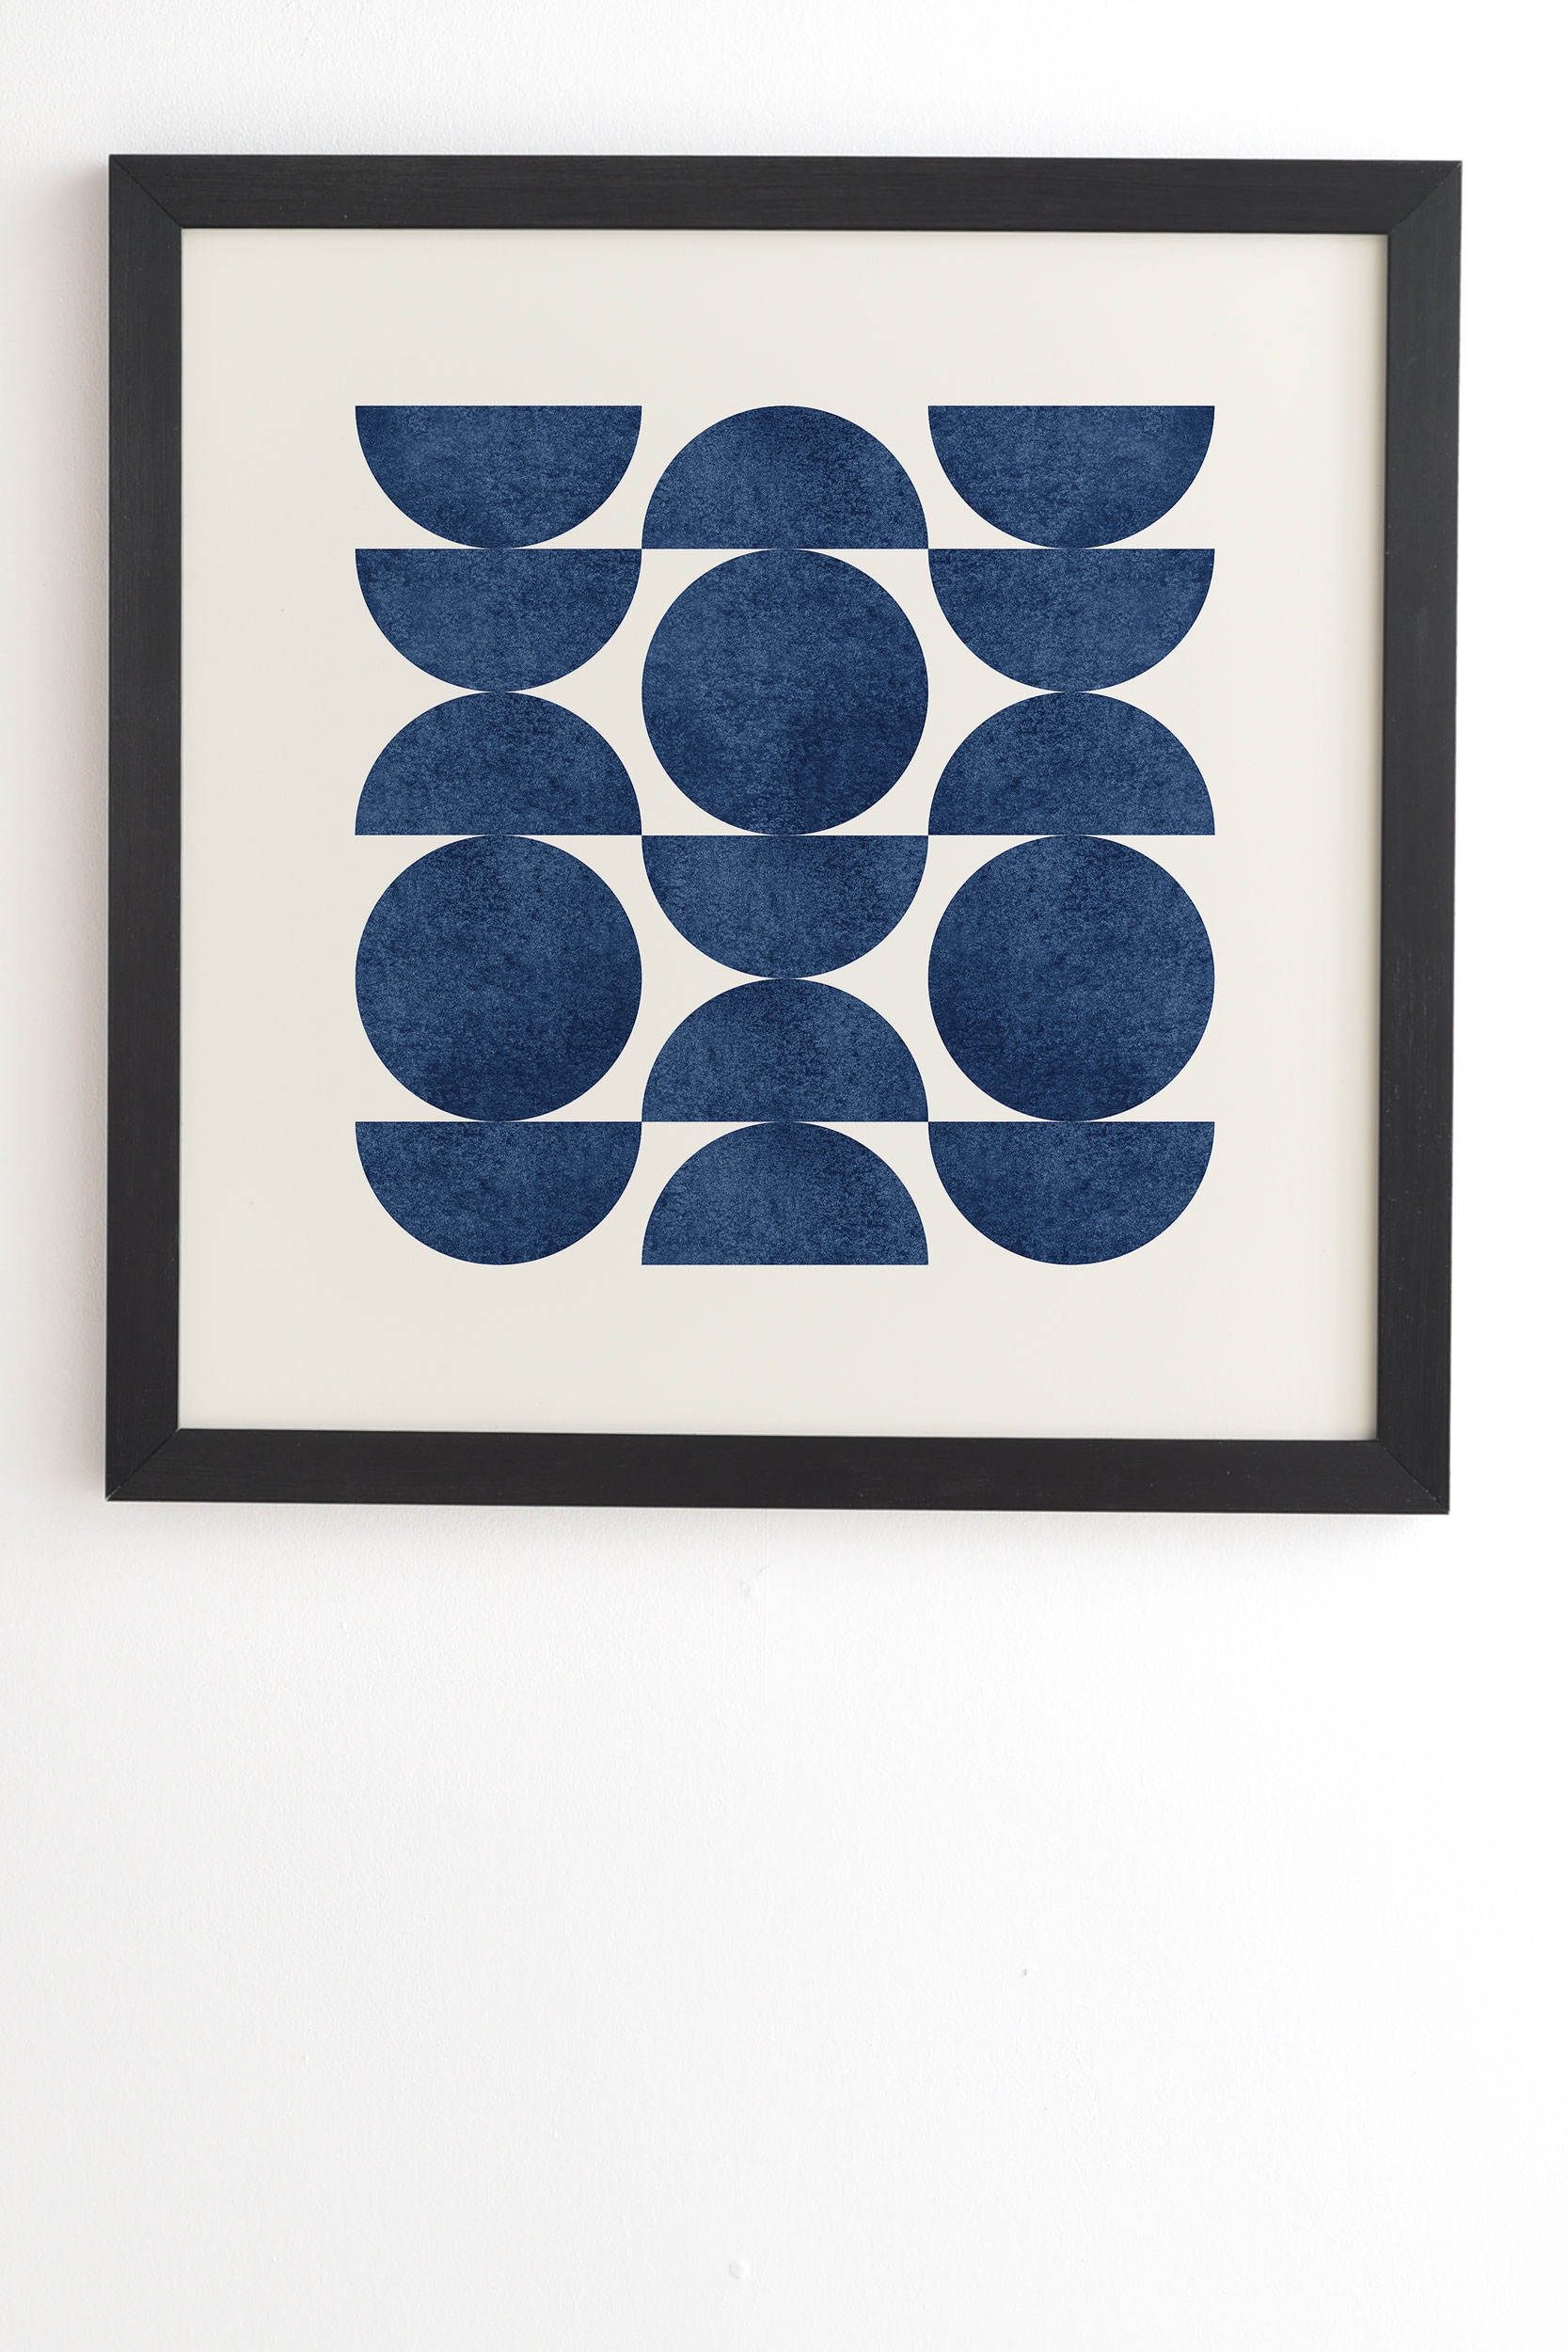 Blue Navy Retro Scandinavian Mid Century by MoonlightPrint - Framed Wall Art Basic Black 30" x 30" - Image 1